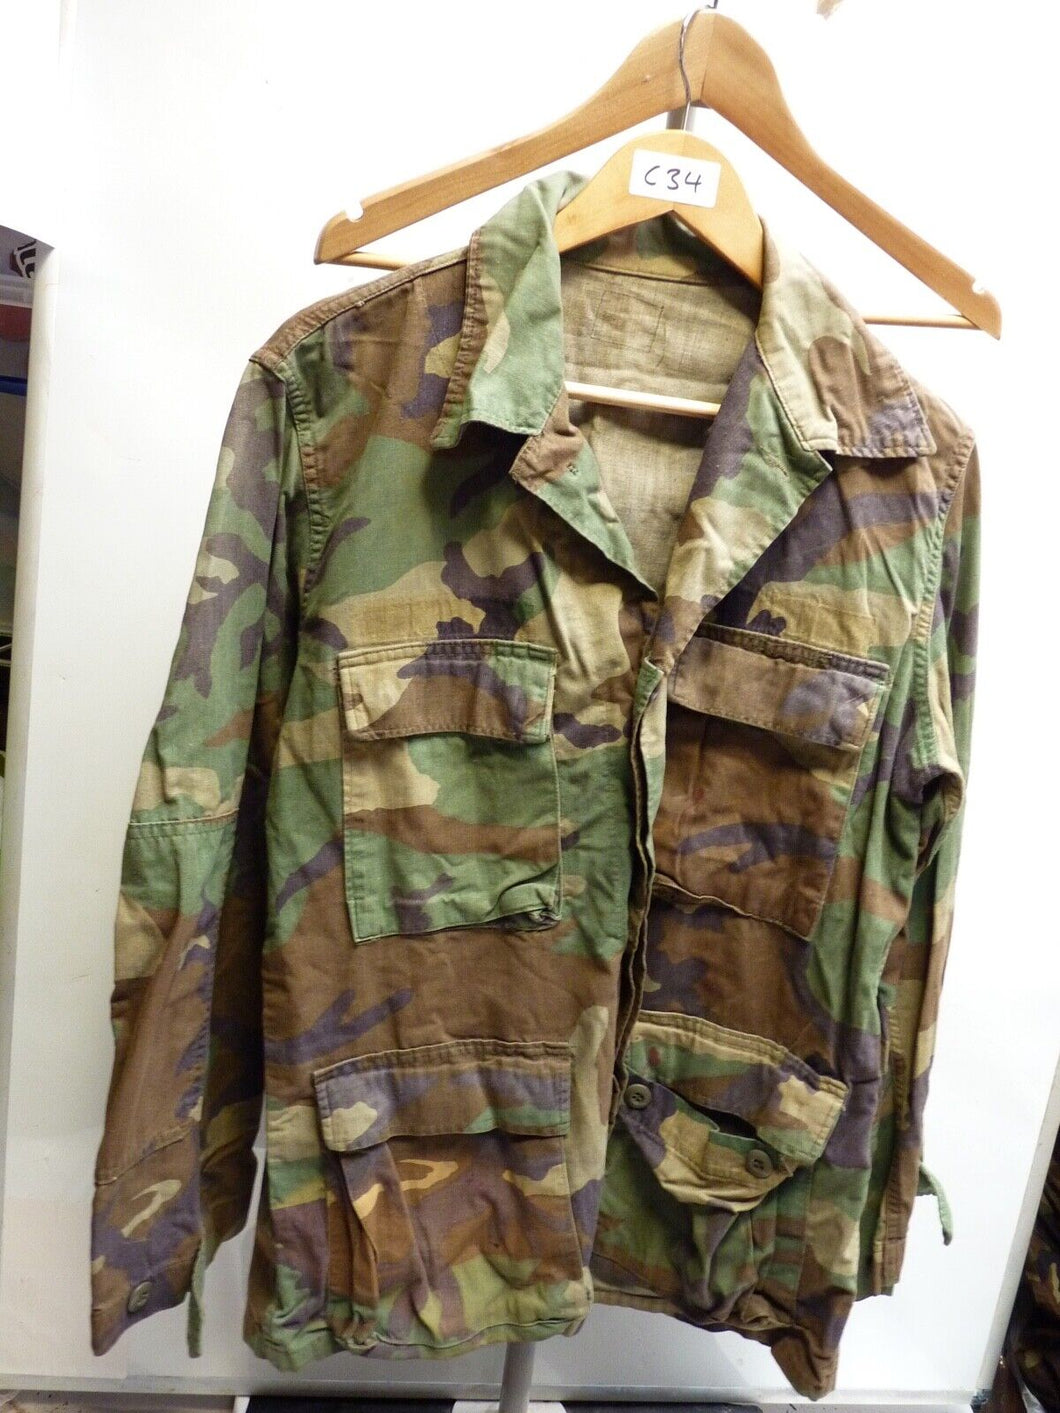 Genuine US Airforce Camouflaged BDU Battledress Uniform - 37 to 41 Inch Chest